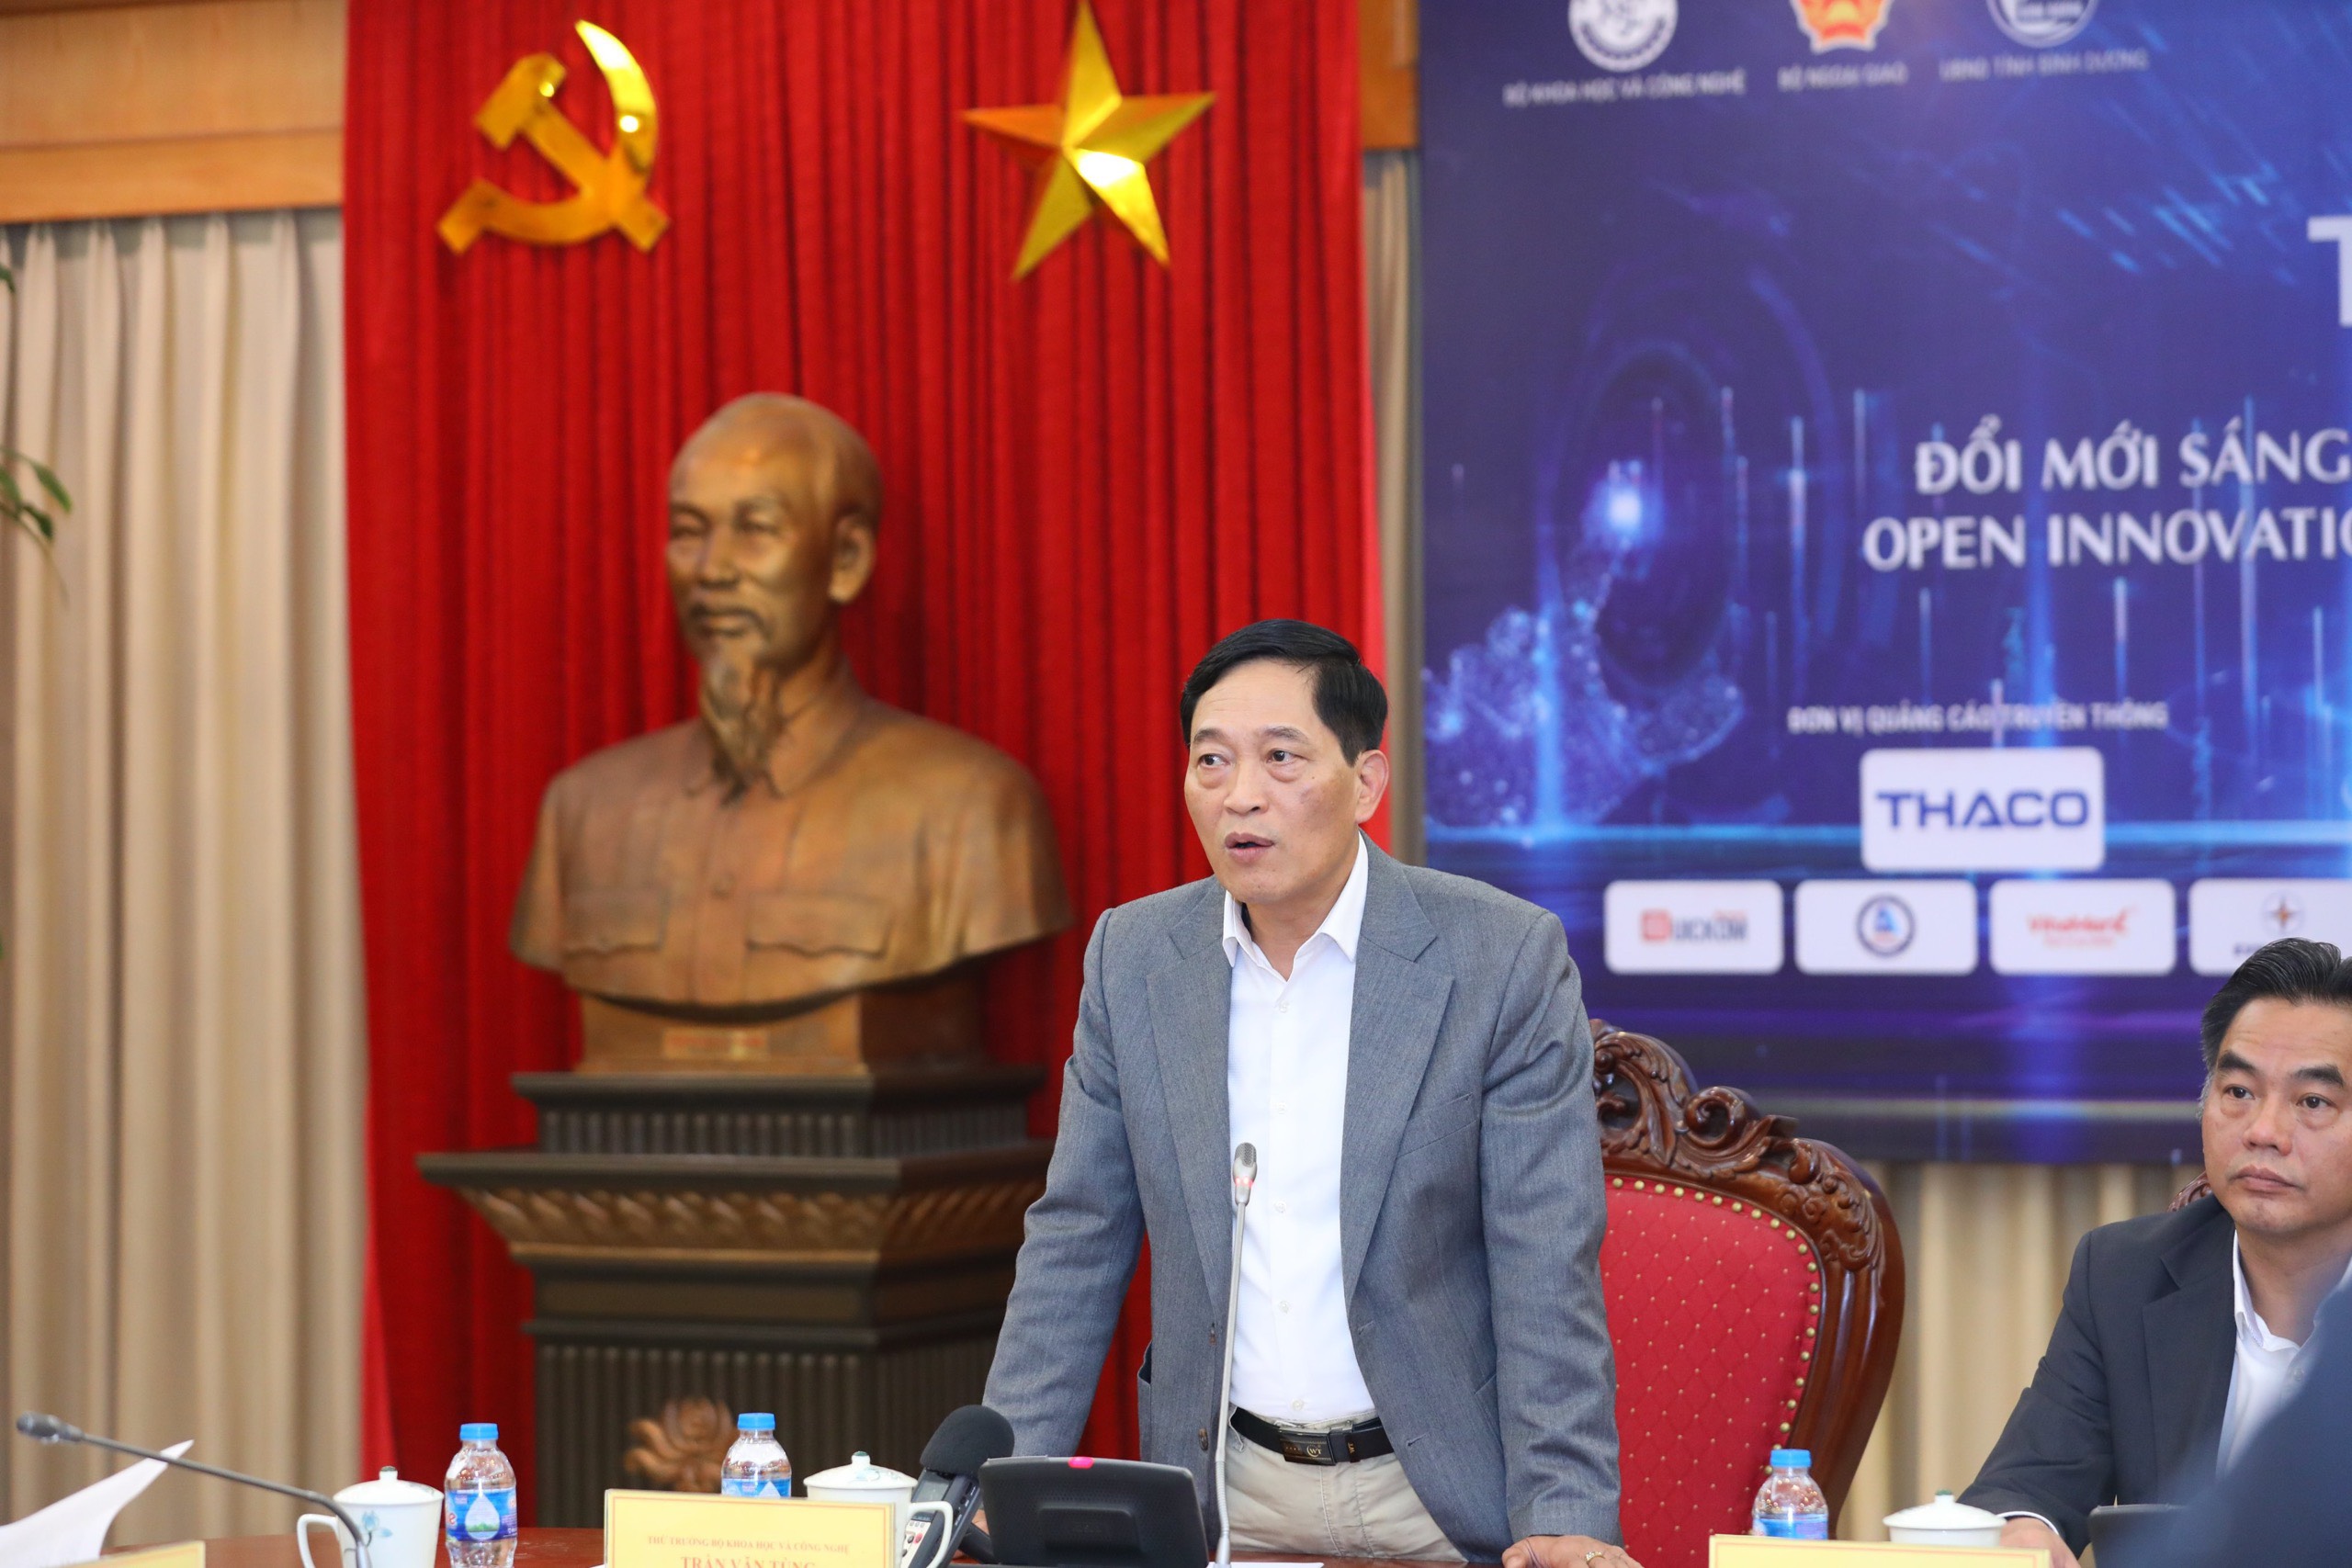 Thứ trưởng Bộ KH&CN Trần Văn Tùng phát biểu tại buổi họp báo thông tin về Techfest Vietnam 2022 ngày 24-11.